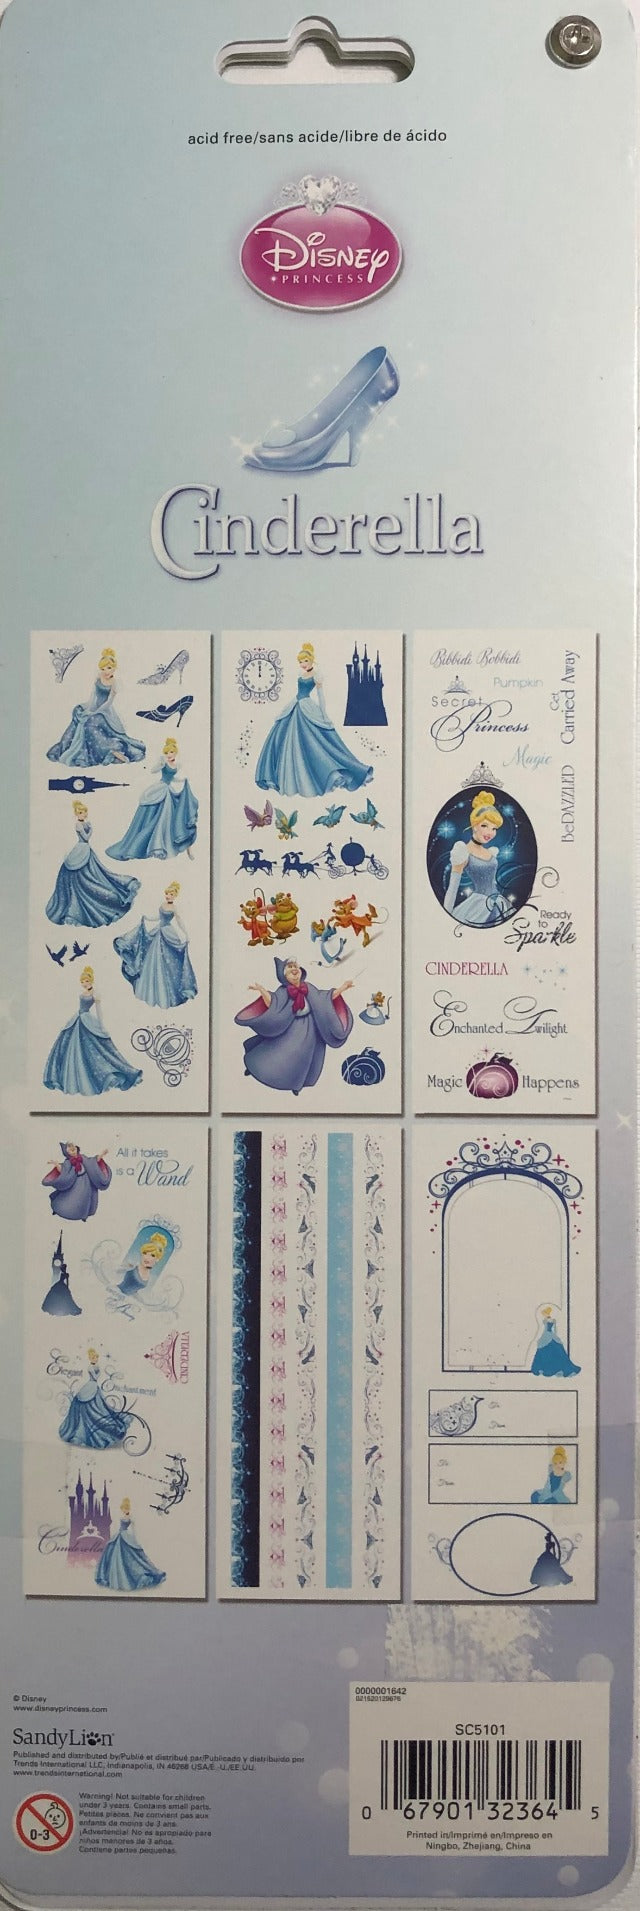 SandyLion Disney Princess Sticker Flip Book - 6 pages - Cinderella